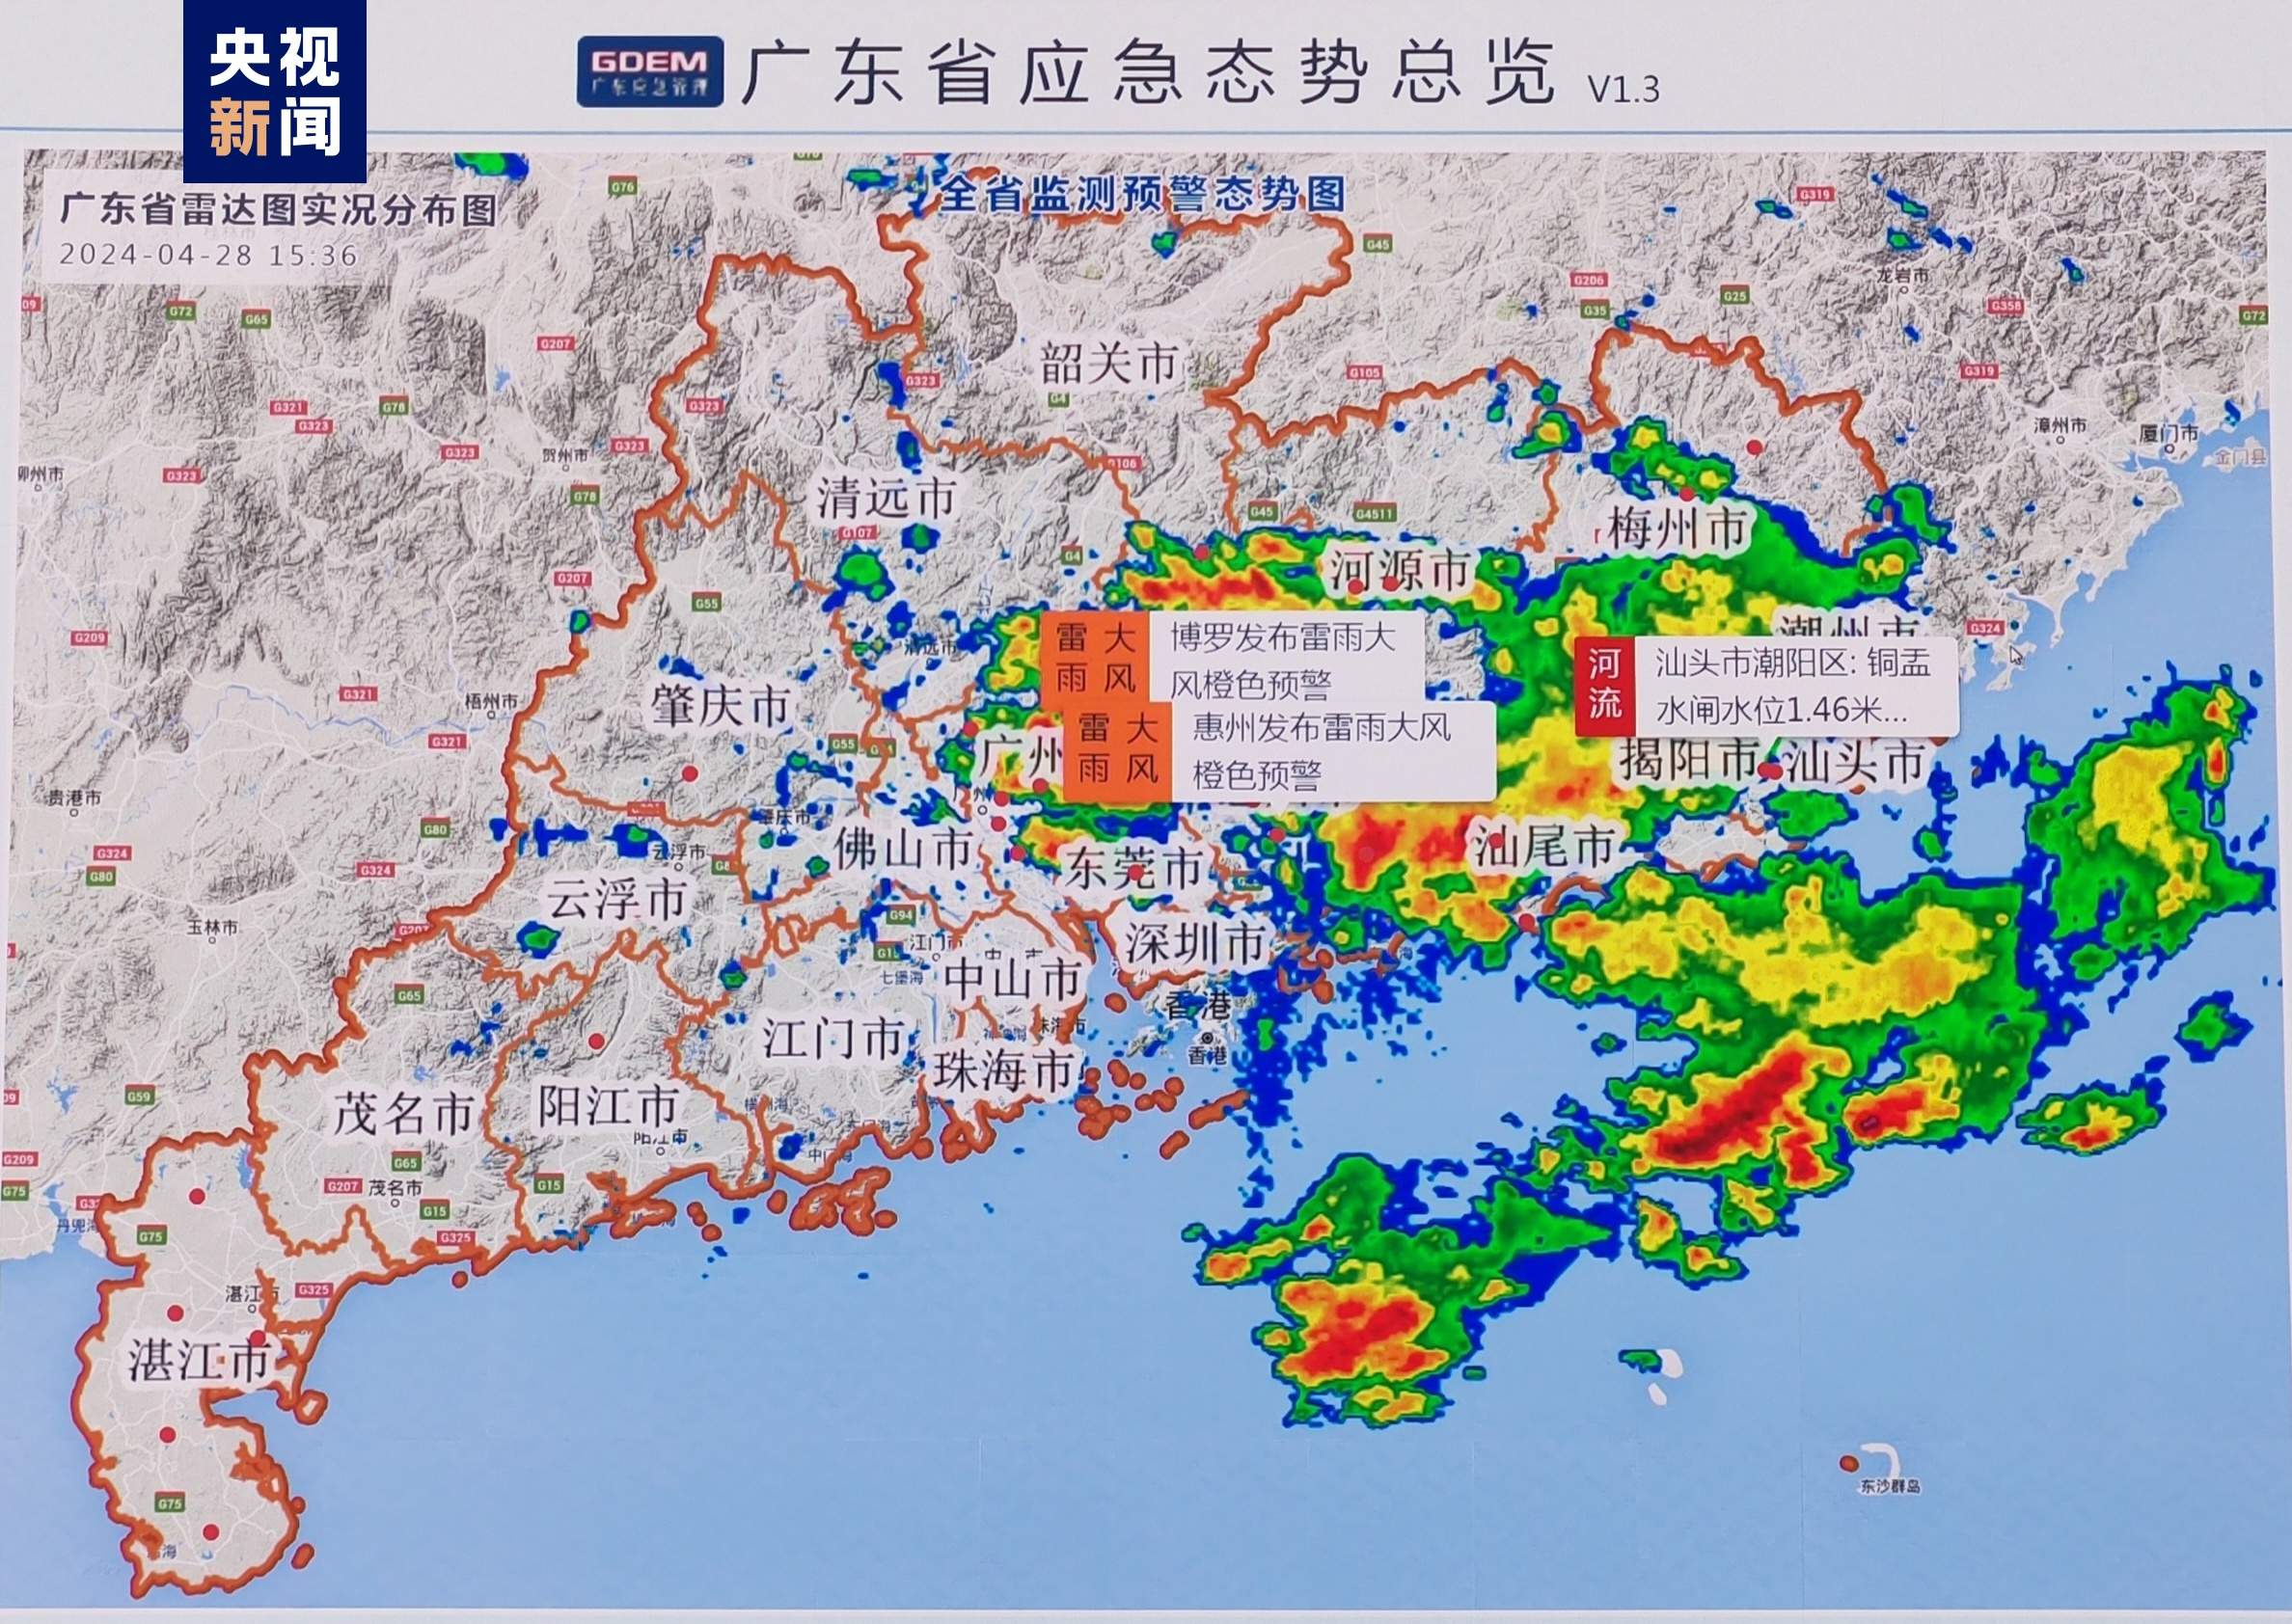 暴雨将至 广东防总启动防汛Ⅳ级应急响应